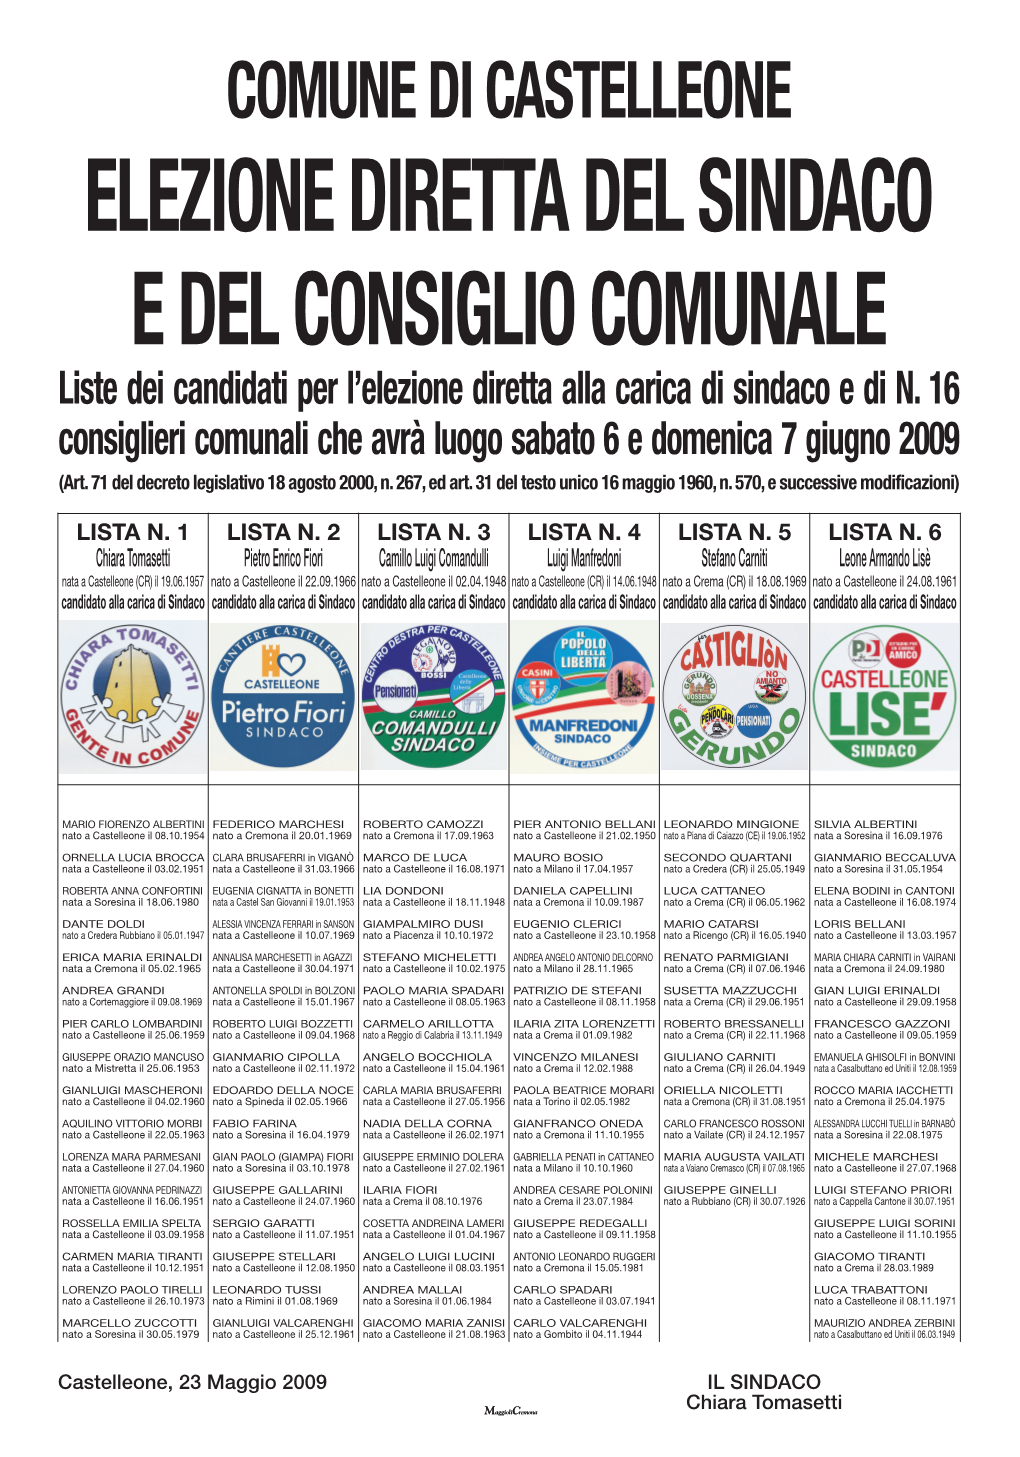 Liste Dei Candidati Per L'elezione Diretta Alla Carica Di Sindaco E Di N. 16 Consiglieri Comunali Che Avrà Luogo Sabato 6 E Domenica 7 Giugno 2009